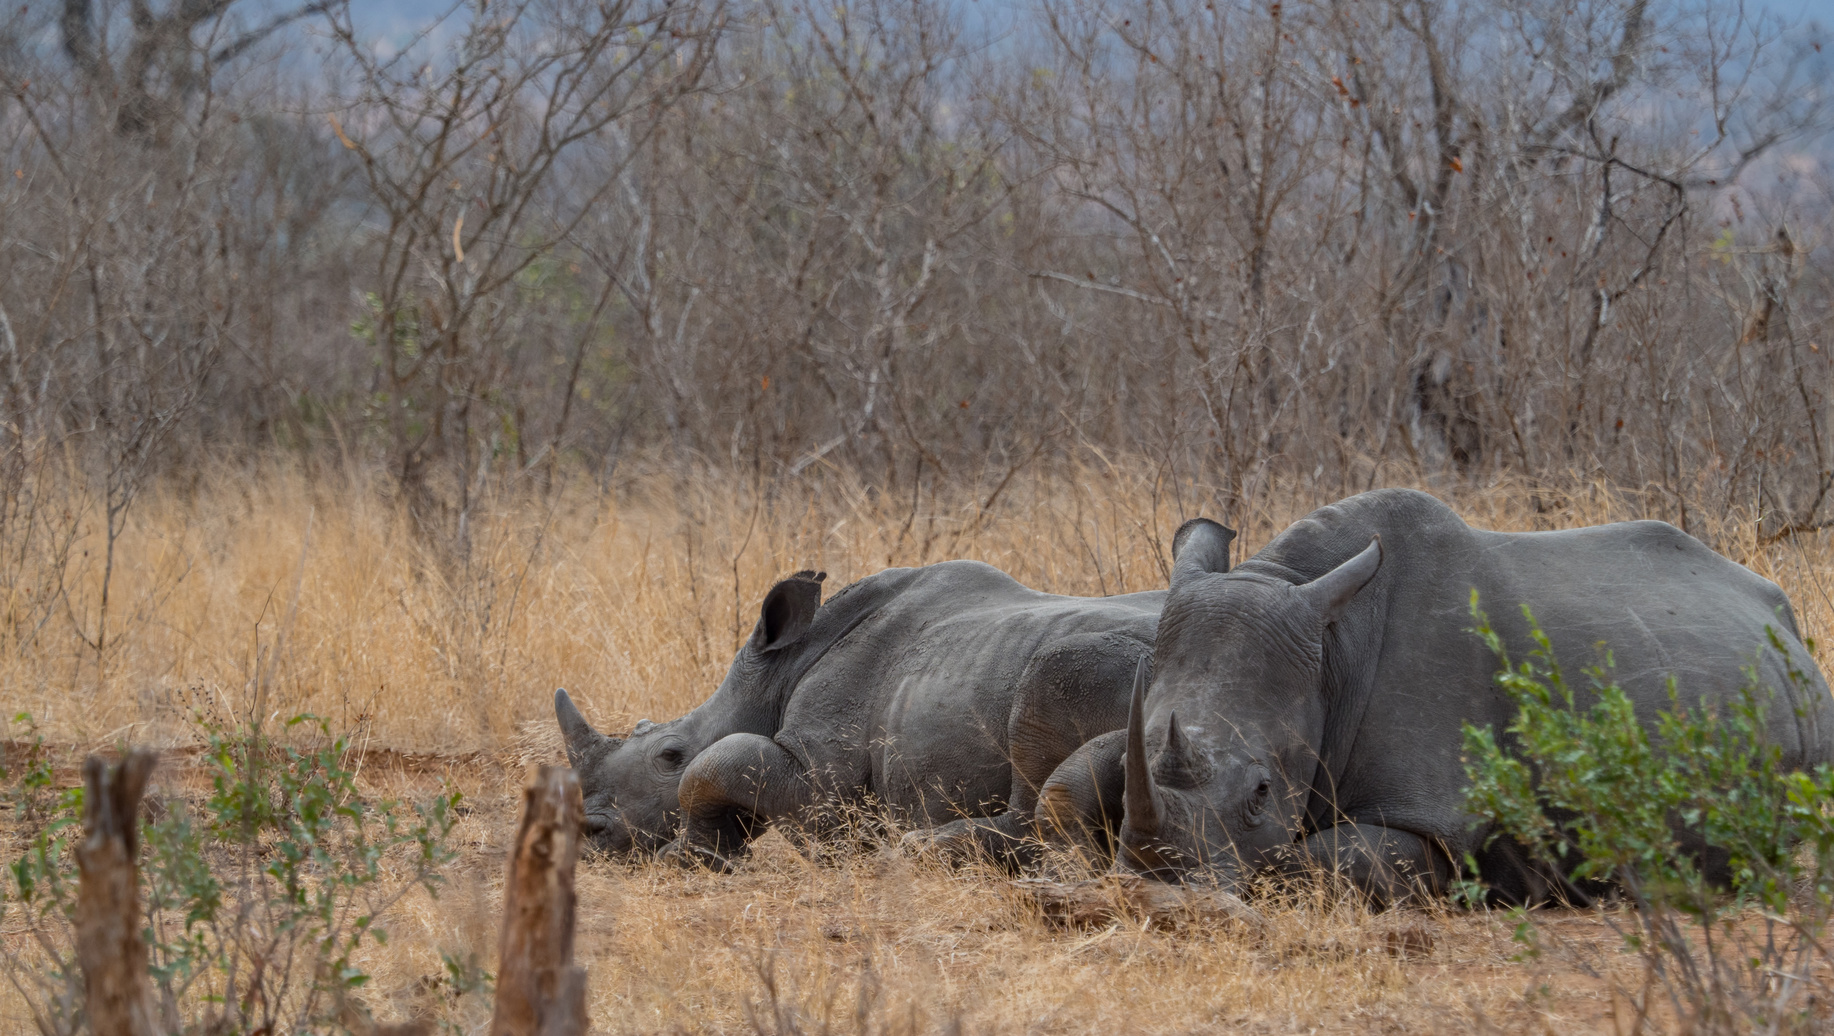 Les rhinocéros sont très menacés, notamment parce que leurs cornes sont convoitées pour les vertus médicinales que leur accordent des traditions asiatiques. © WilcoUK